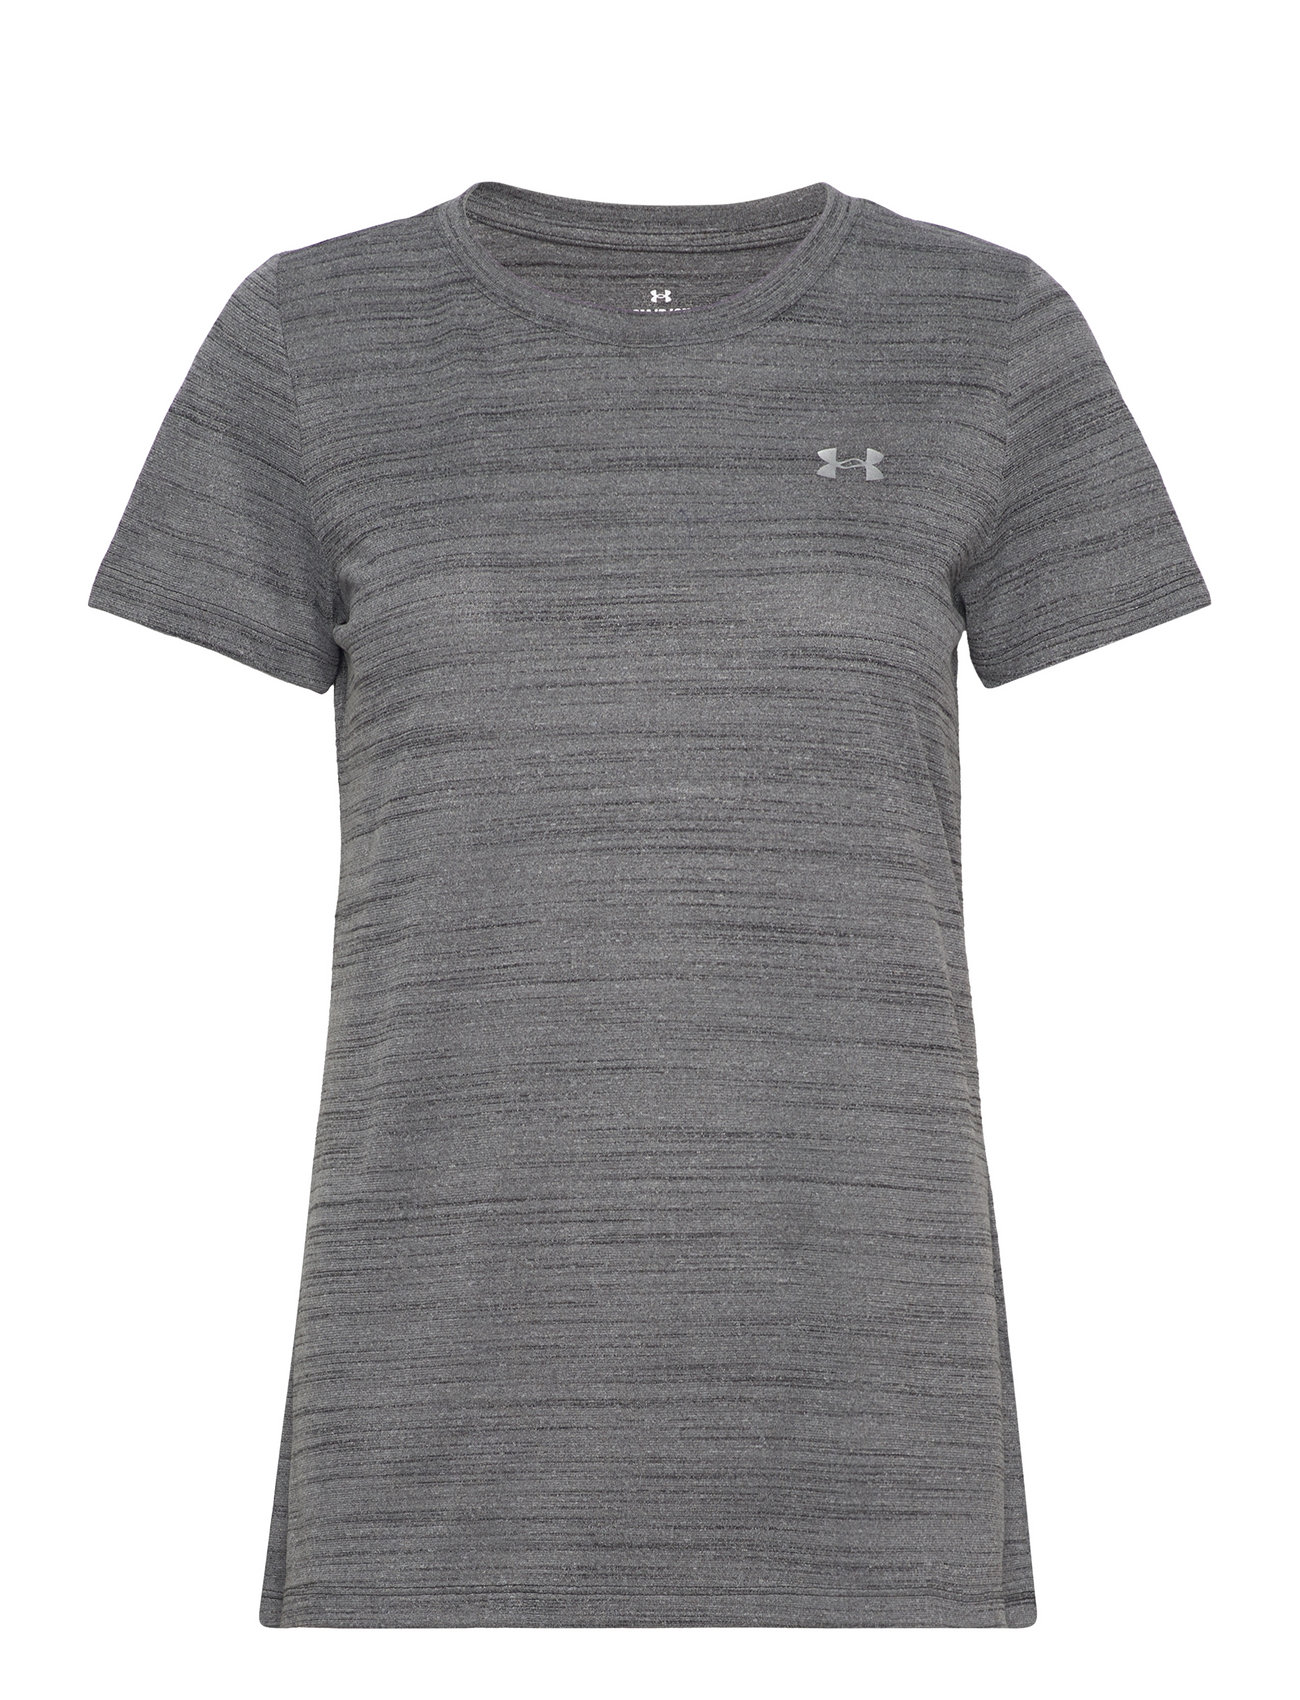 Ua Tech Tiger Ssc Sport T-shirts & Tops Short-sleeved Grey Under Armour